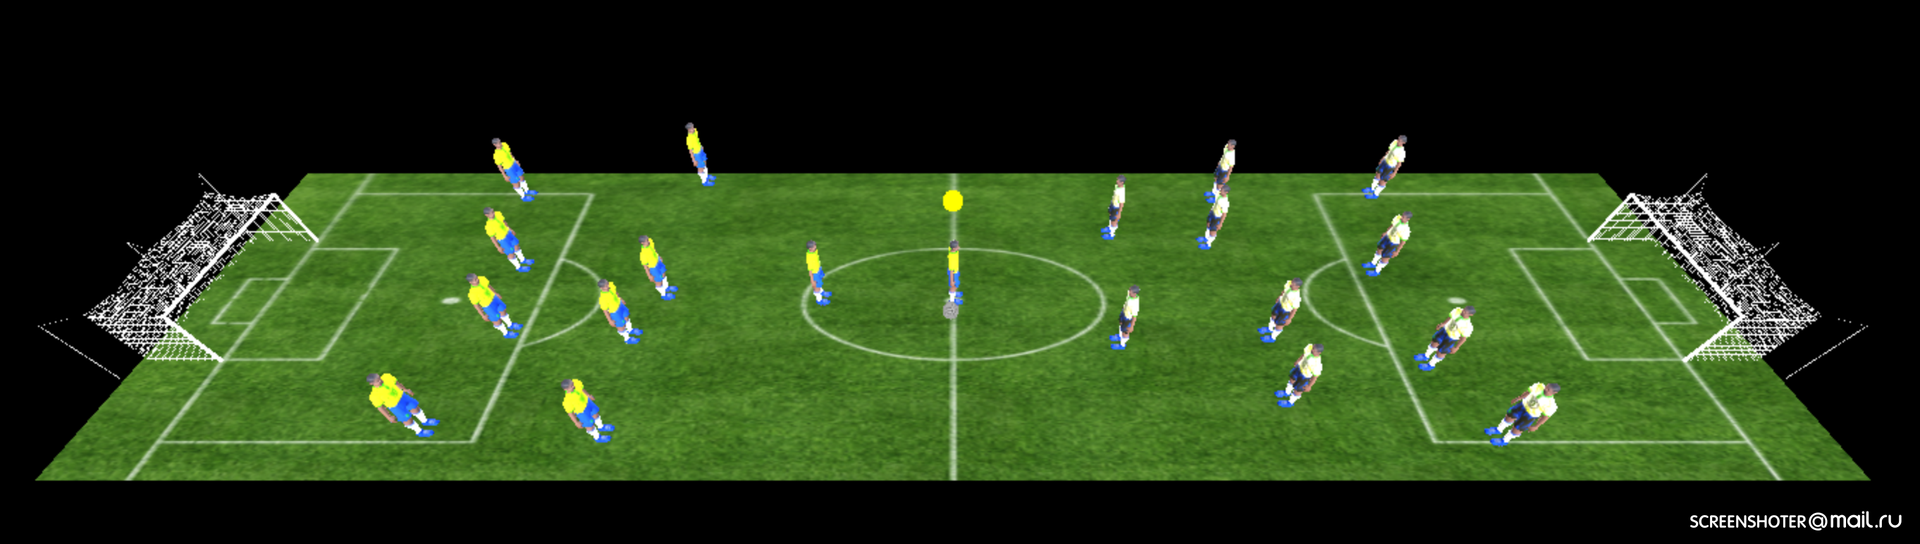 Как я браузерный 3D-футбол писала. Часть 2 - 1